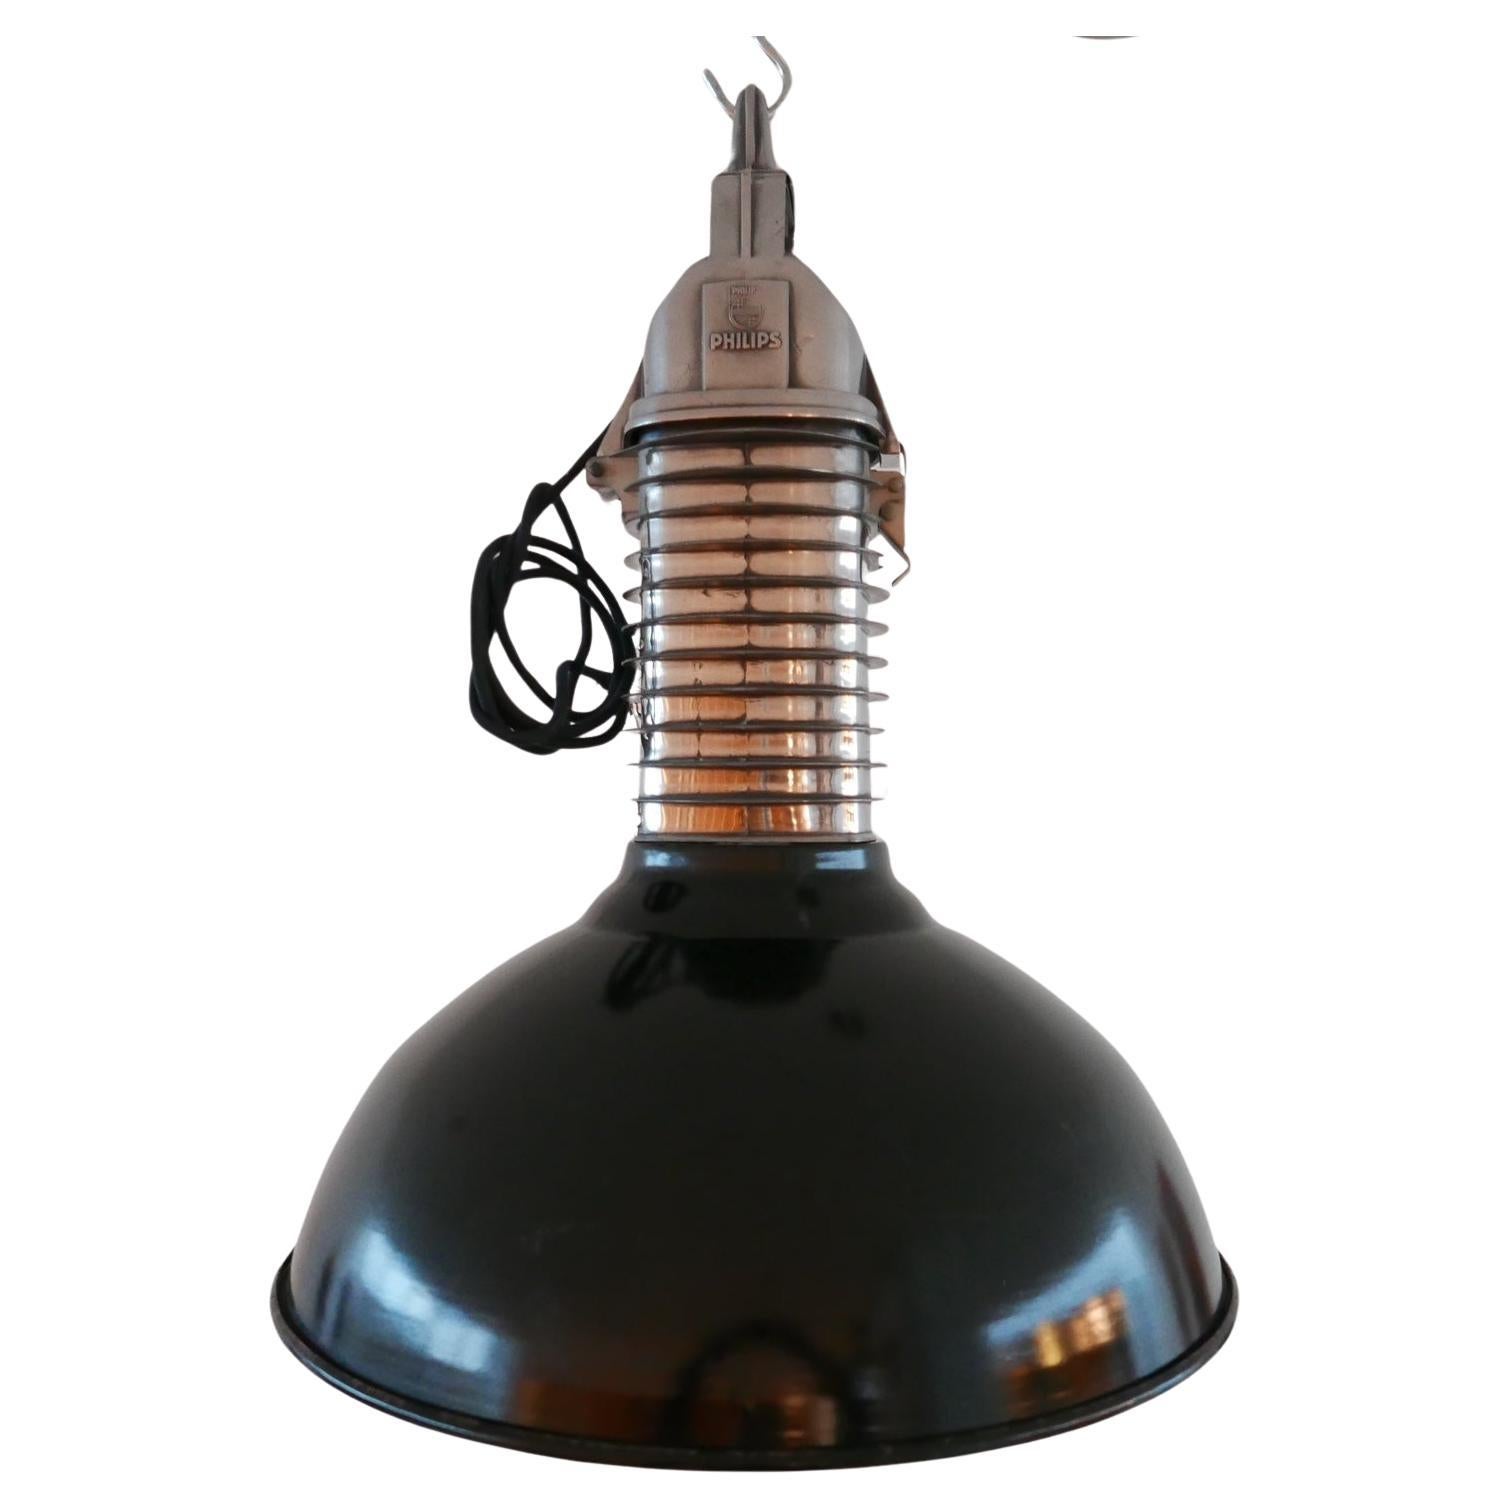 Pair of Original Mid-Century Dutch Philips Industrial Pendant Lamps 